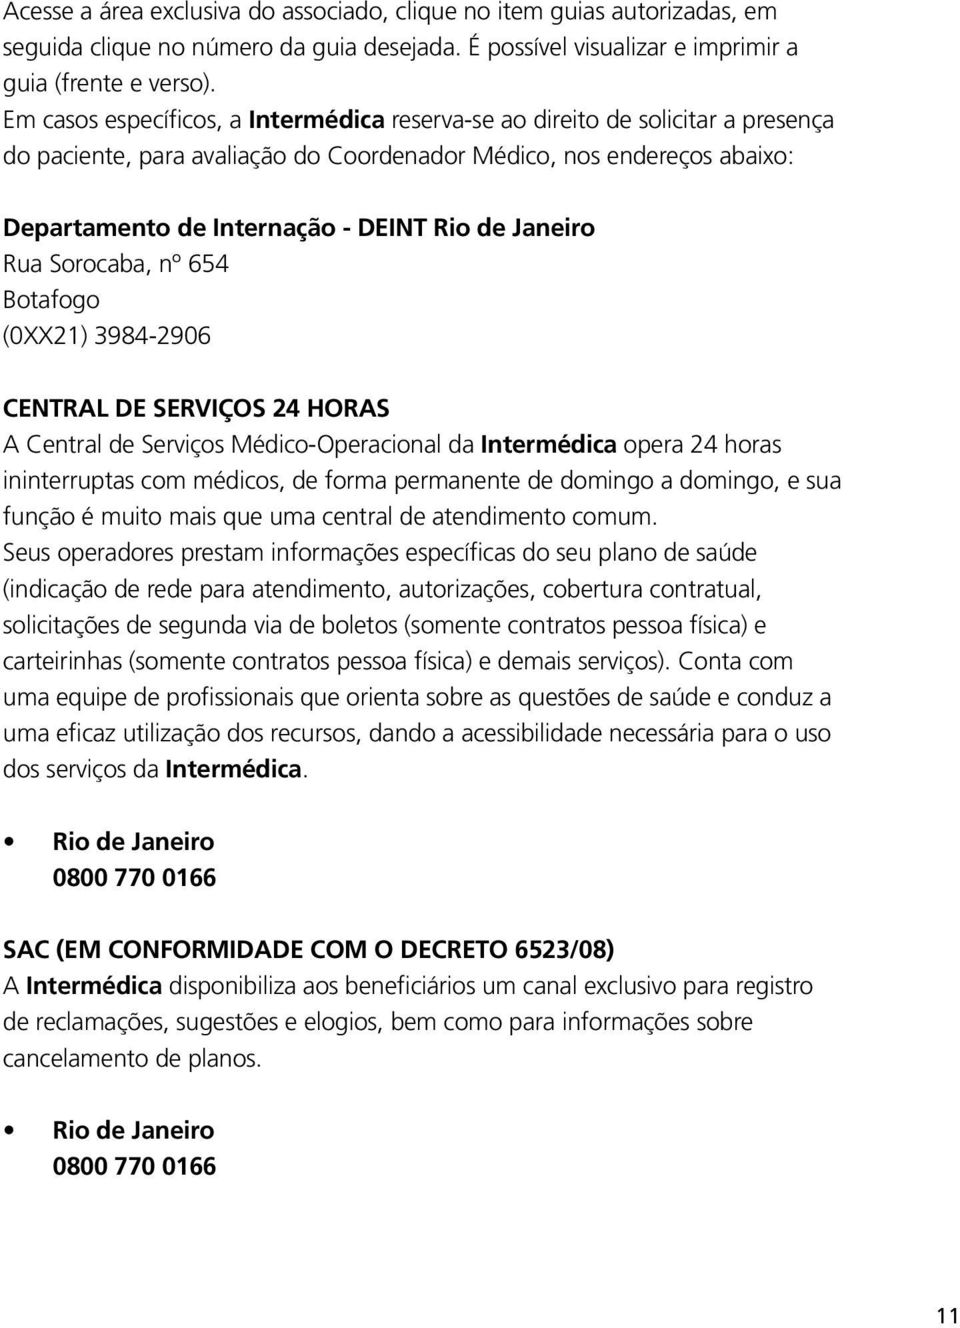 Janeiro Rua Sorocaba, nº 654 Botafogo (0XX21) 3984-2906 CENTRAL DE SERVIÇOS 24 HORAS A Central de Serviços Médico-Operacional da Intermédica opera 24 horas ininterruptas com médicos, de forma